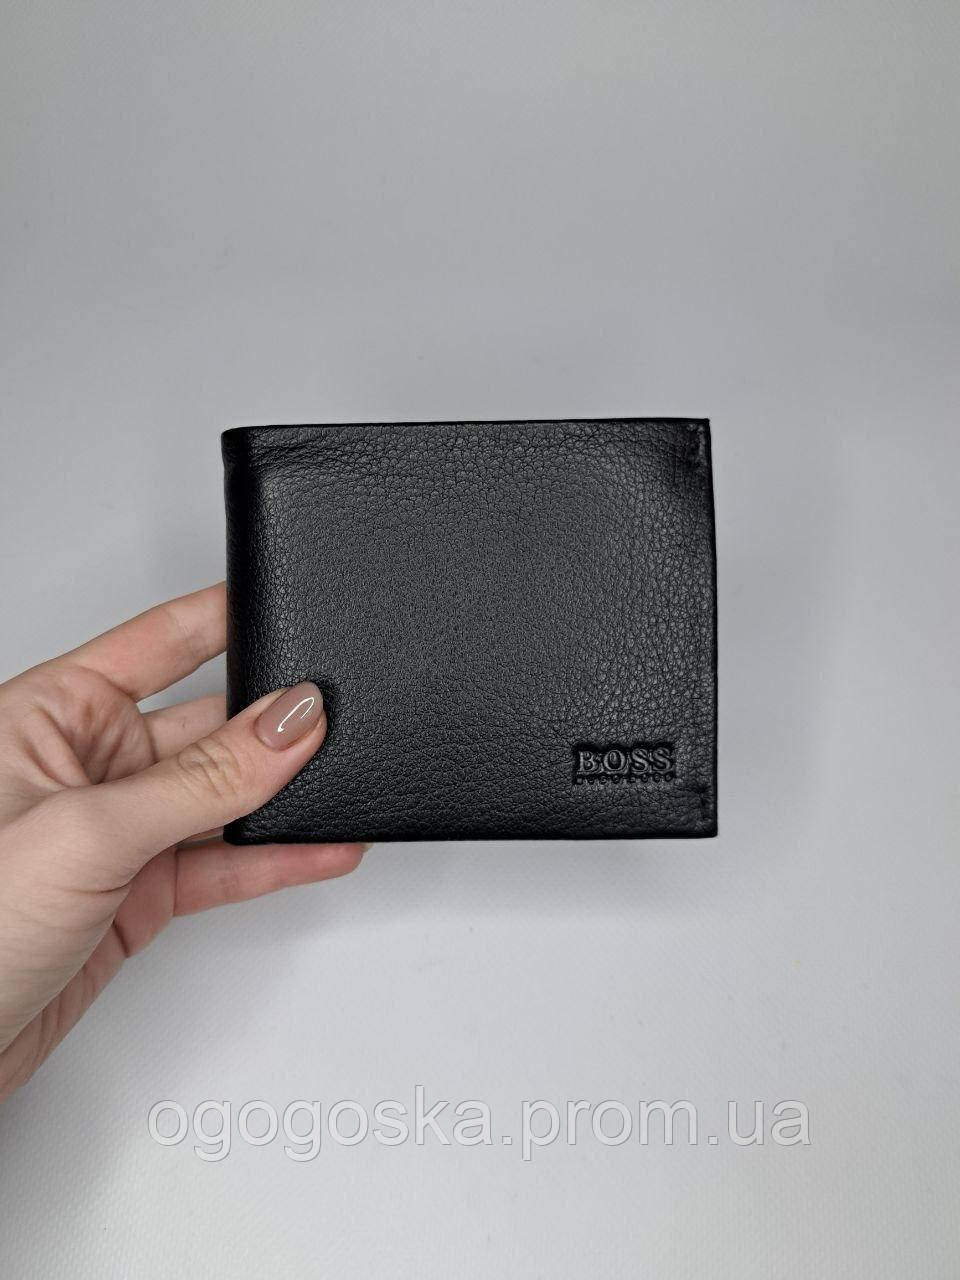 Шкіряний чоловічий гаманець Boss 5530 на магнітній застібці